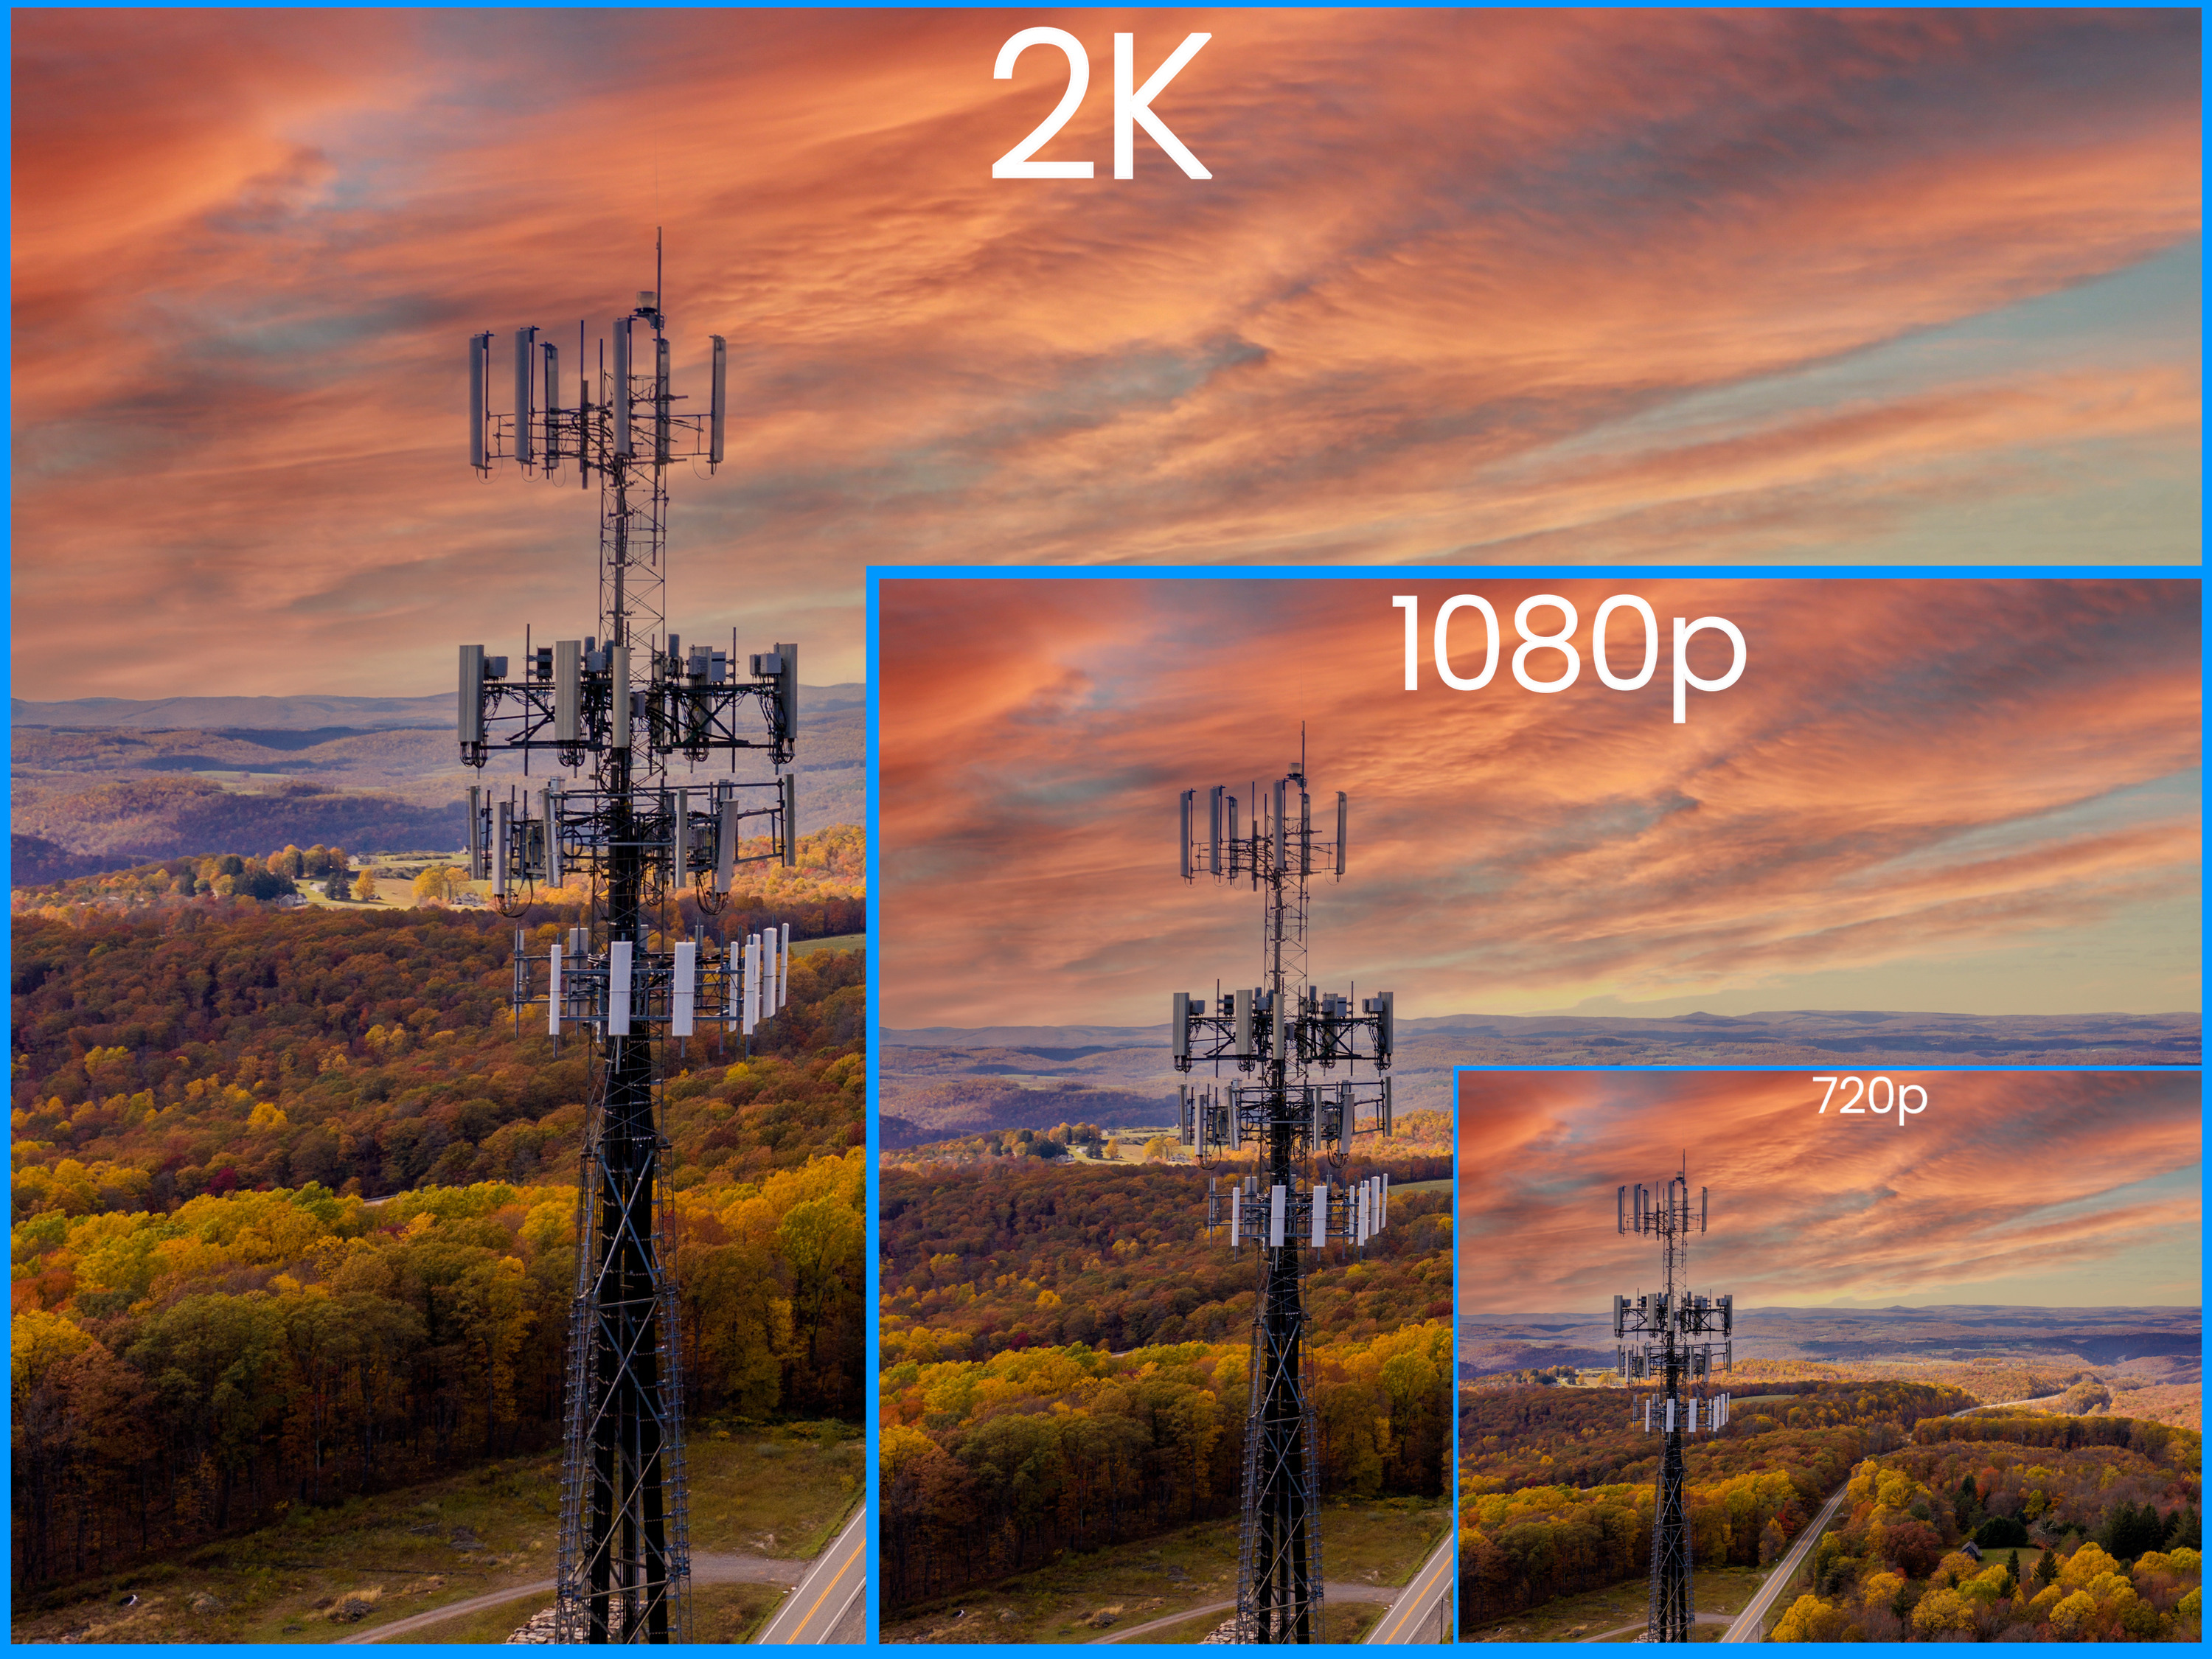 2K resolution vs 1080p resolution